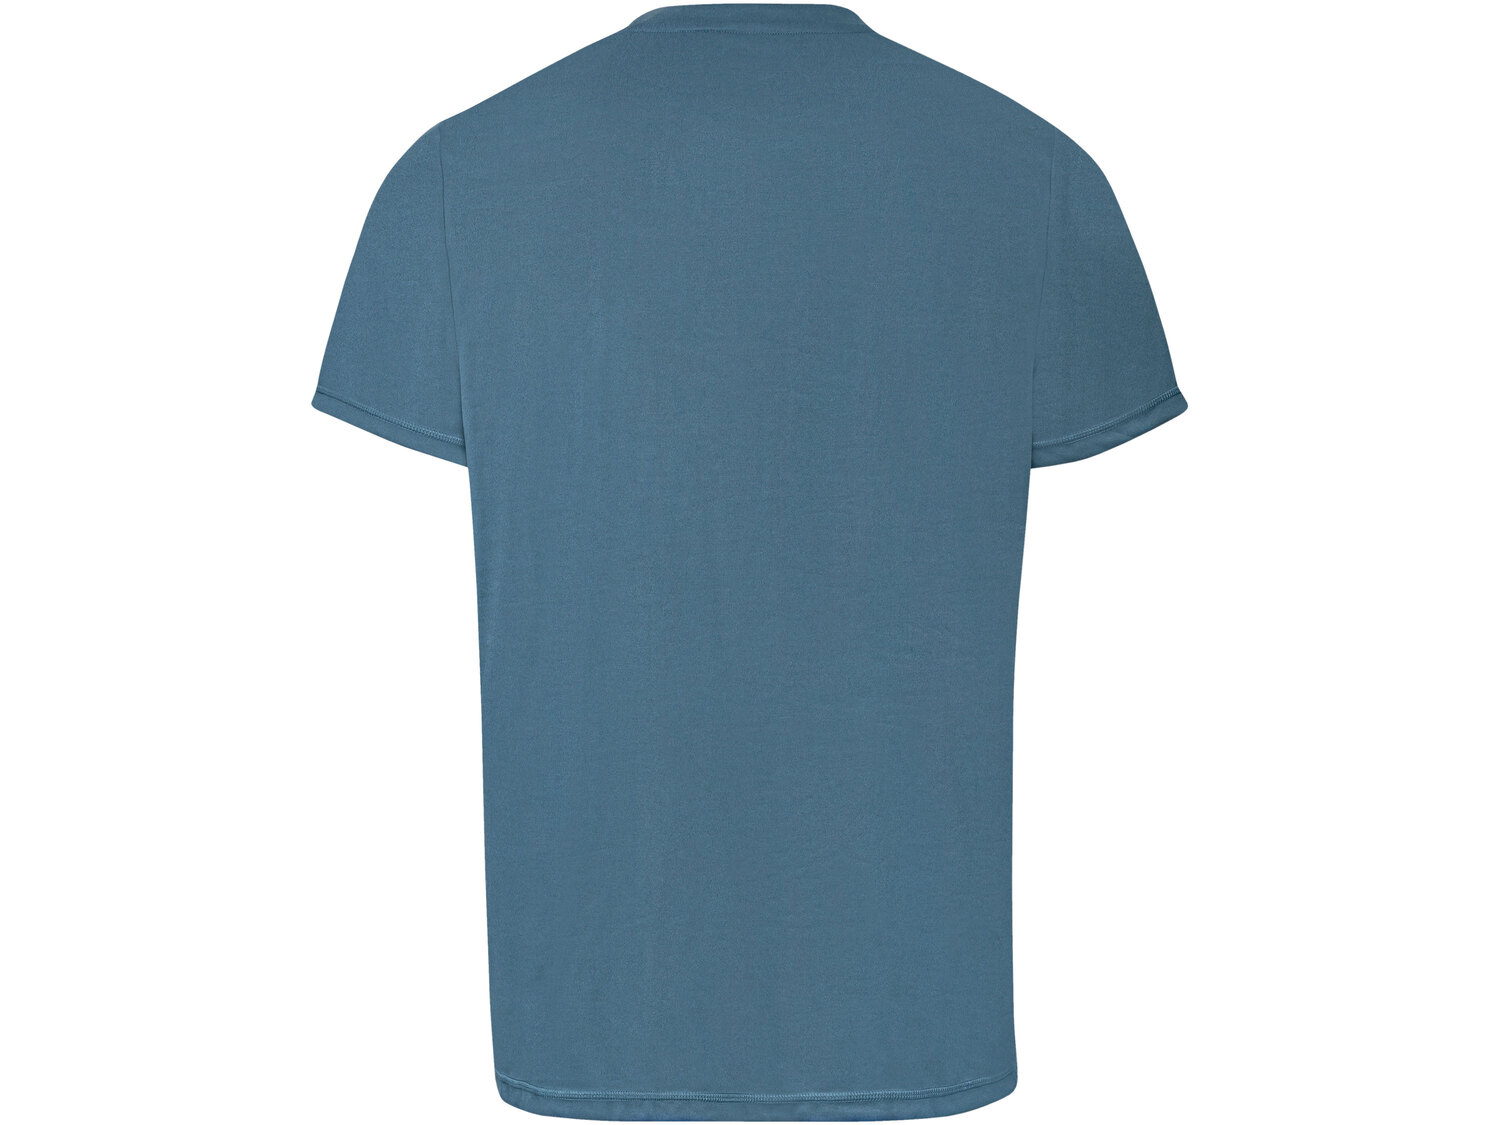 T-shirt funkcyjny męski Crivit, cena 19,99 PLN 
- rozmiary: M-XL
Dostępne rozmiary

Opis

- ...